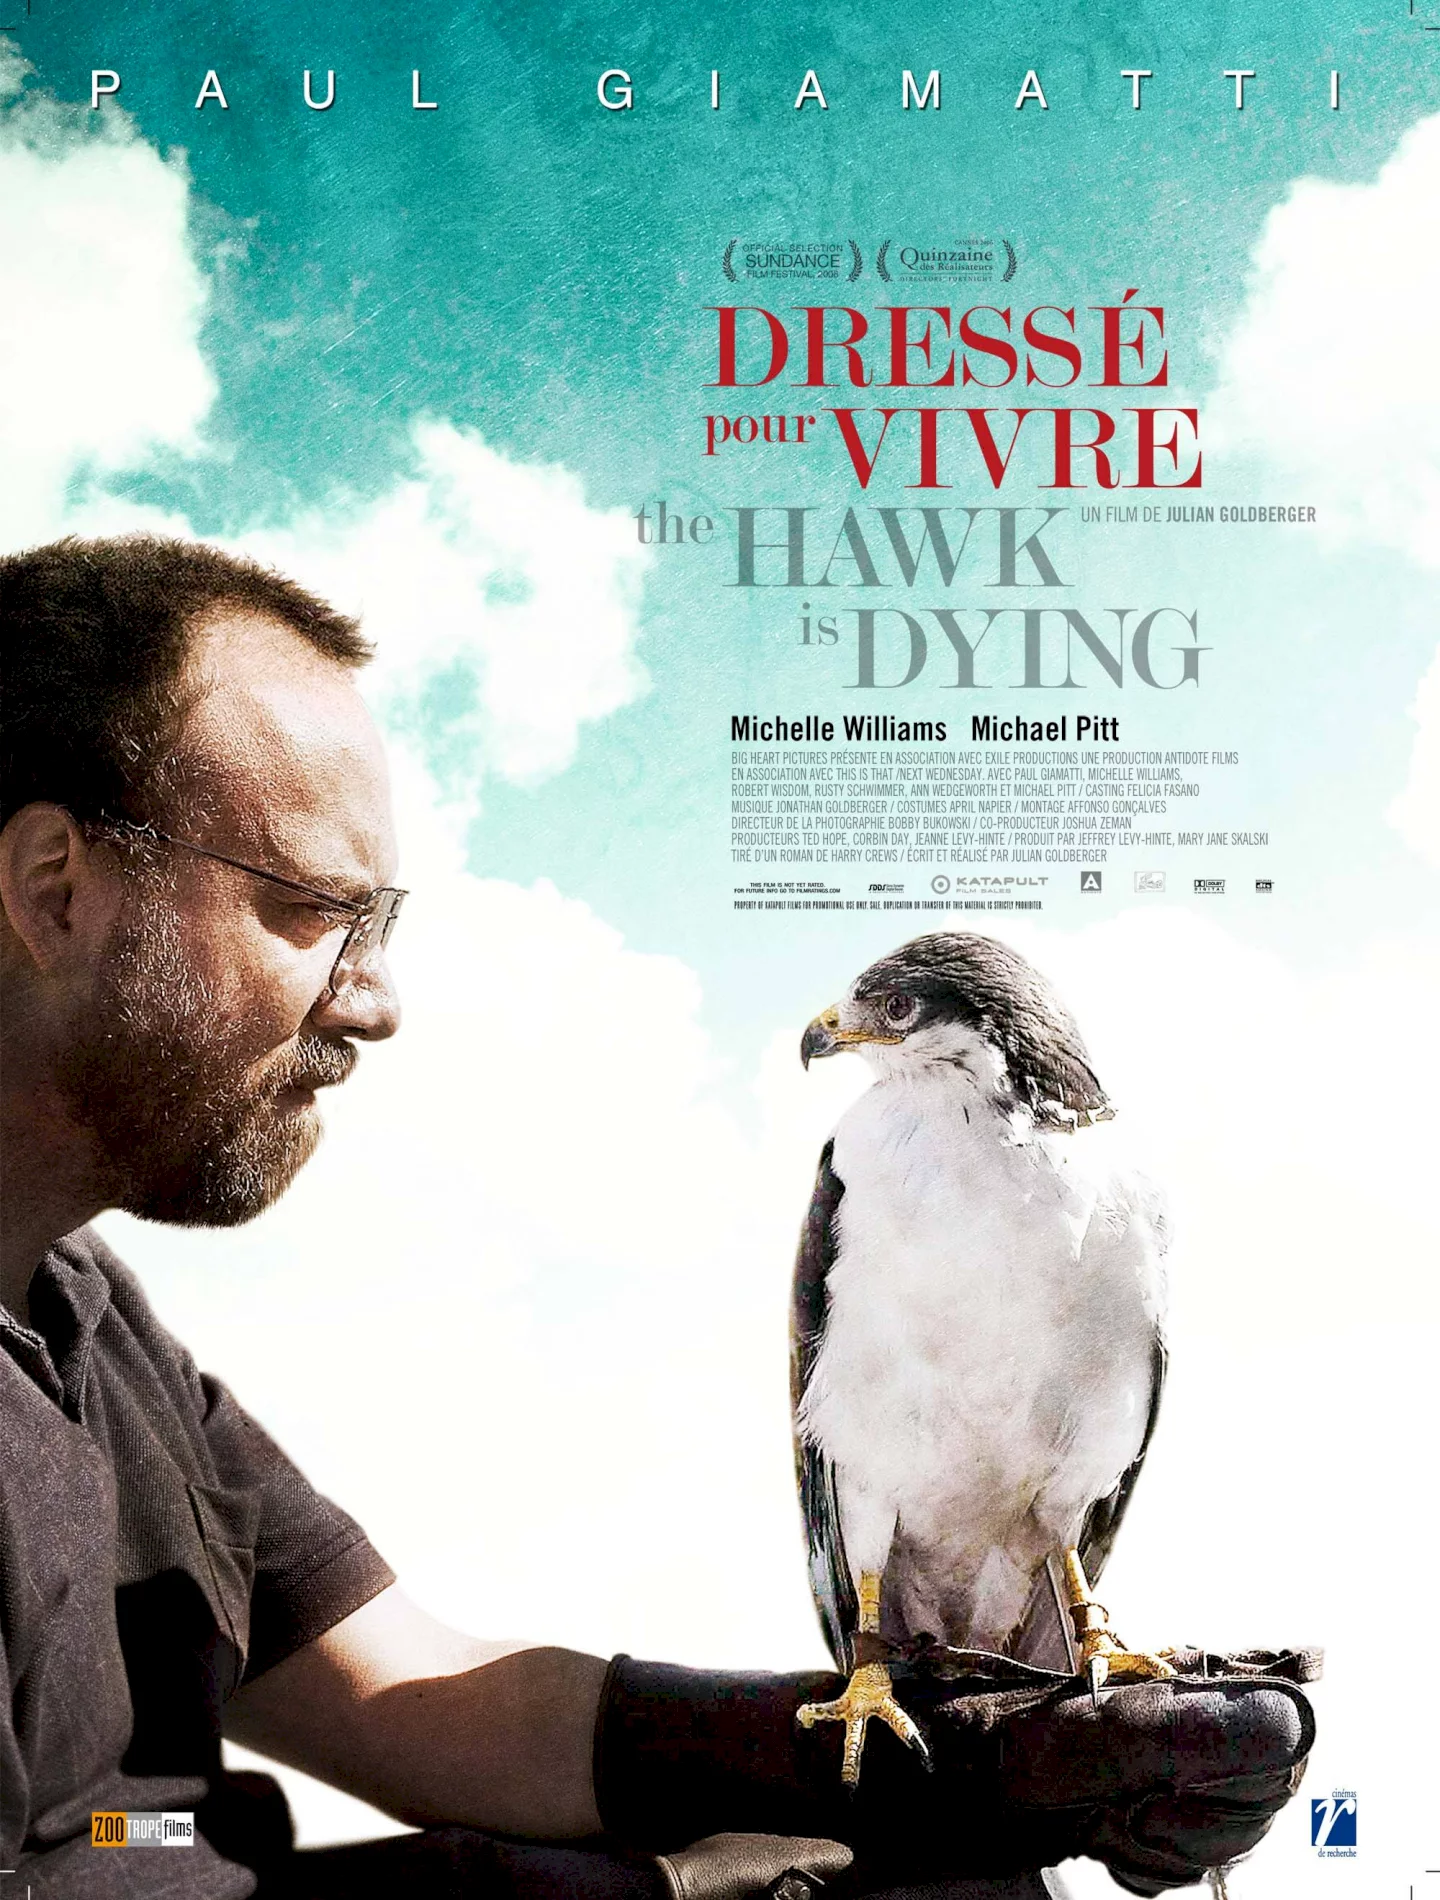 Photo du film : The hawk is dying, dressé pour vivre